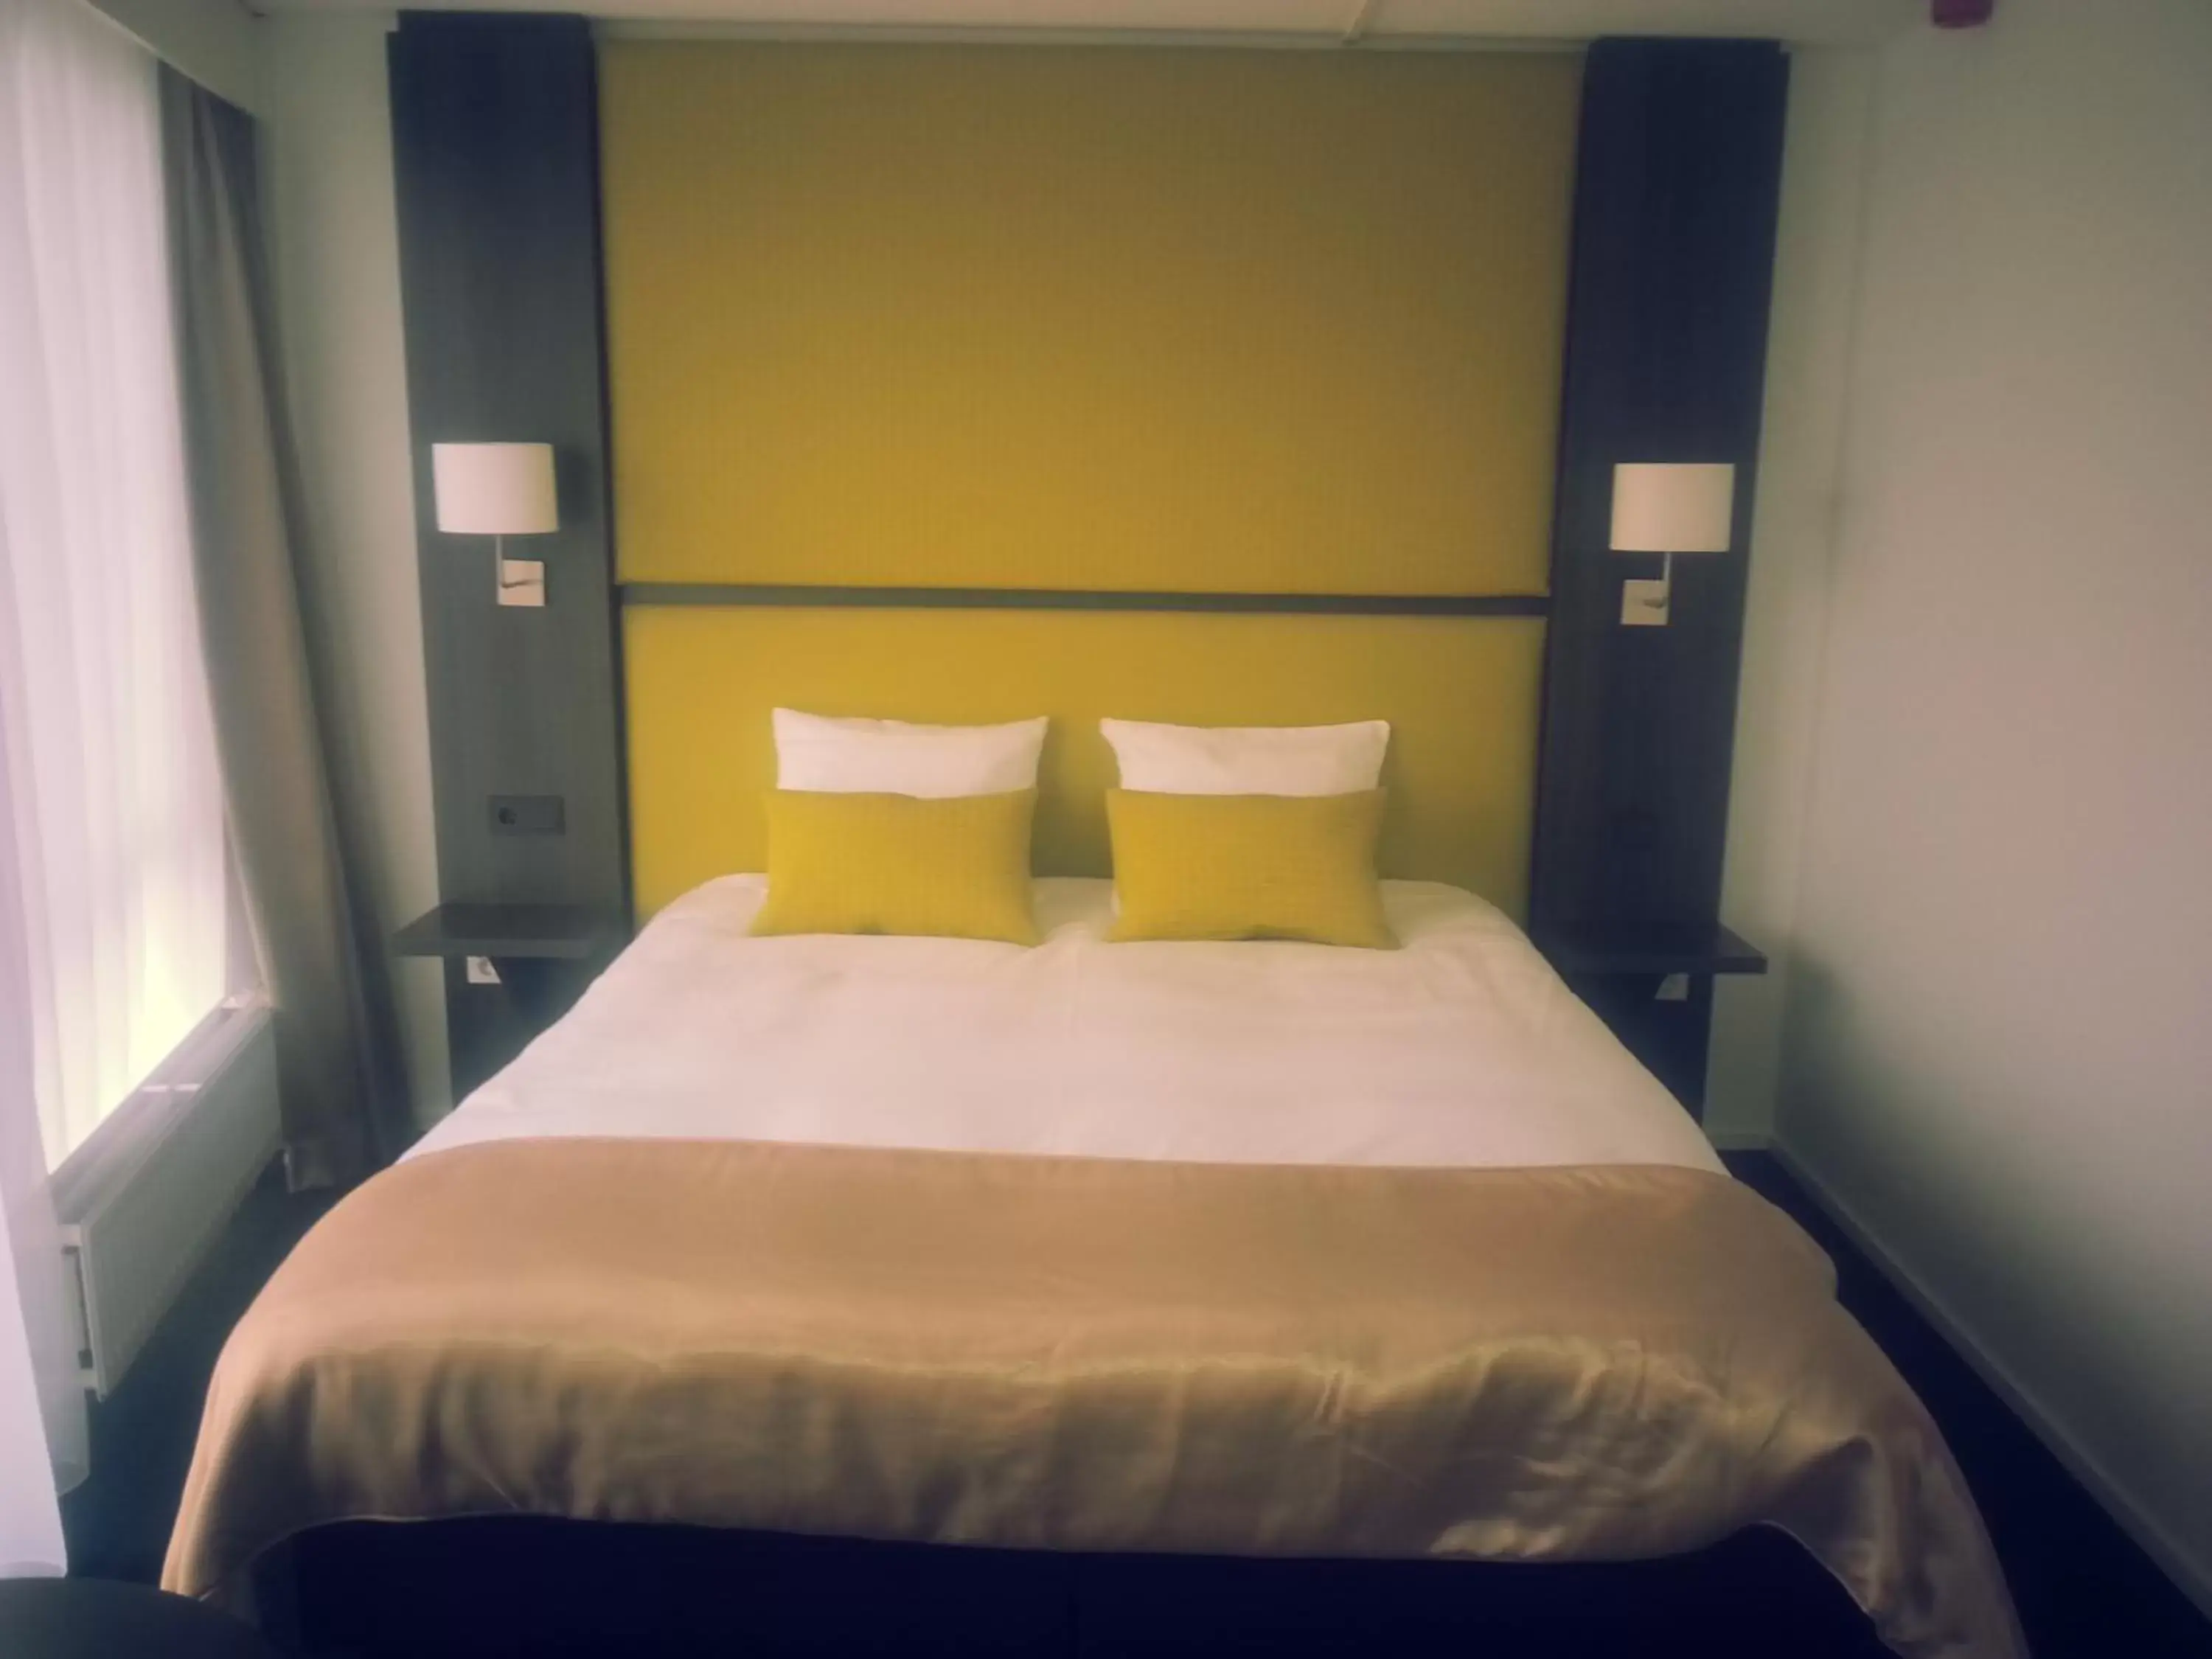 Bed, Room Photo in Hotel Medemblik